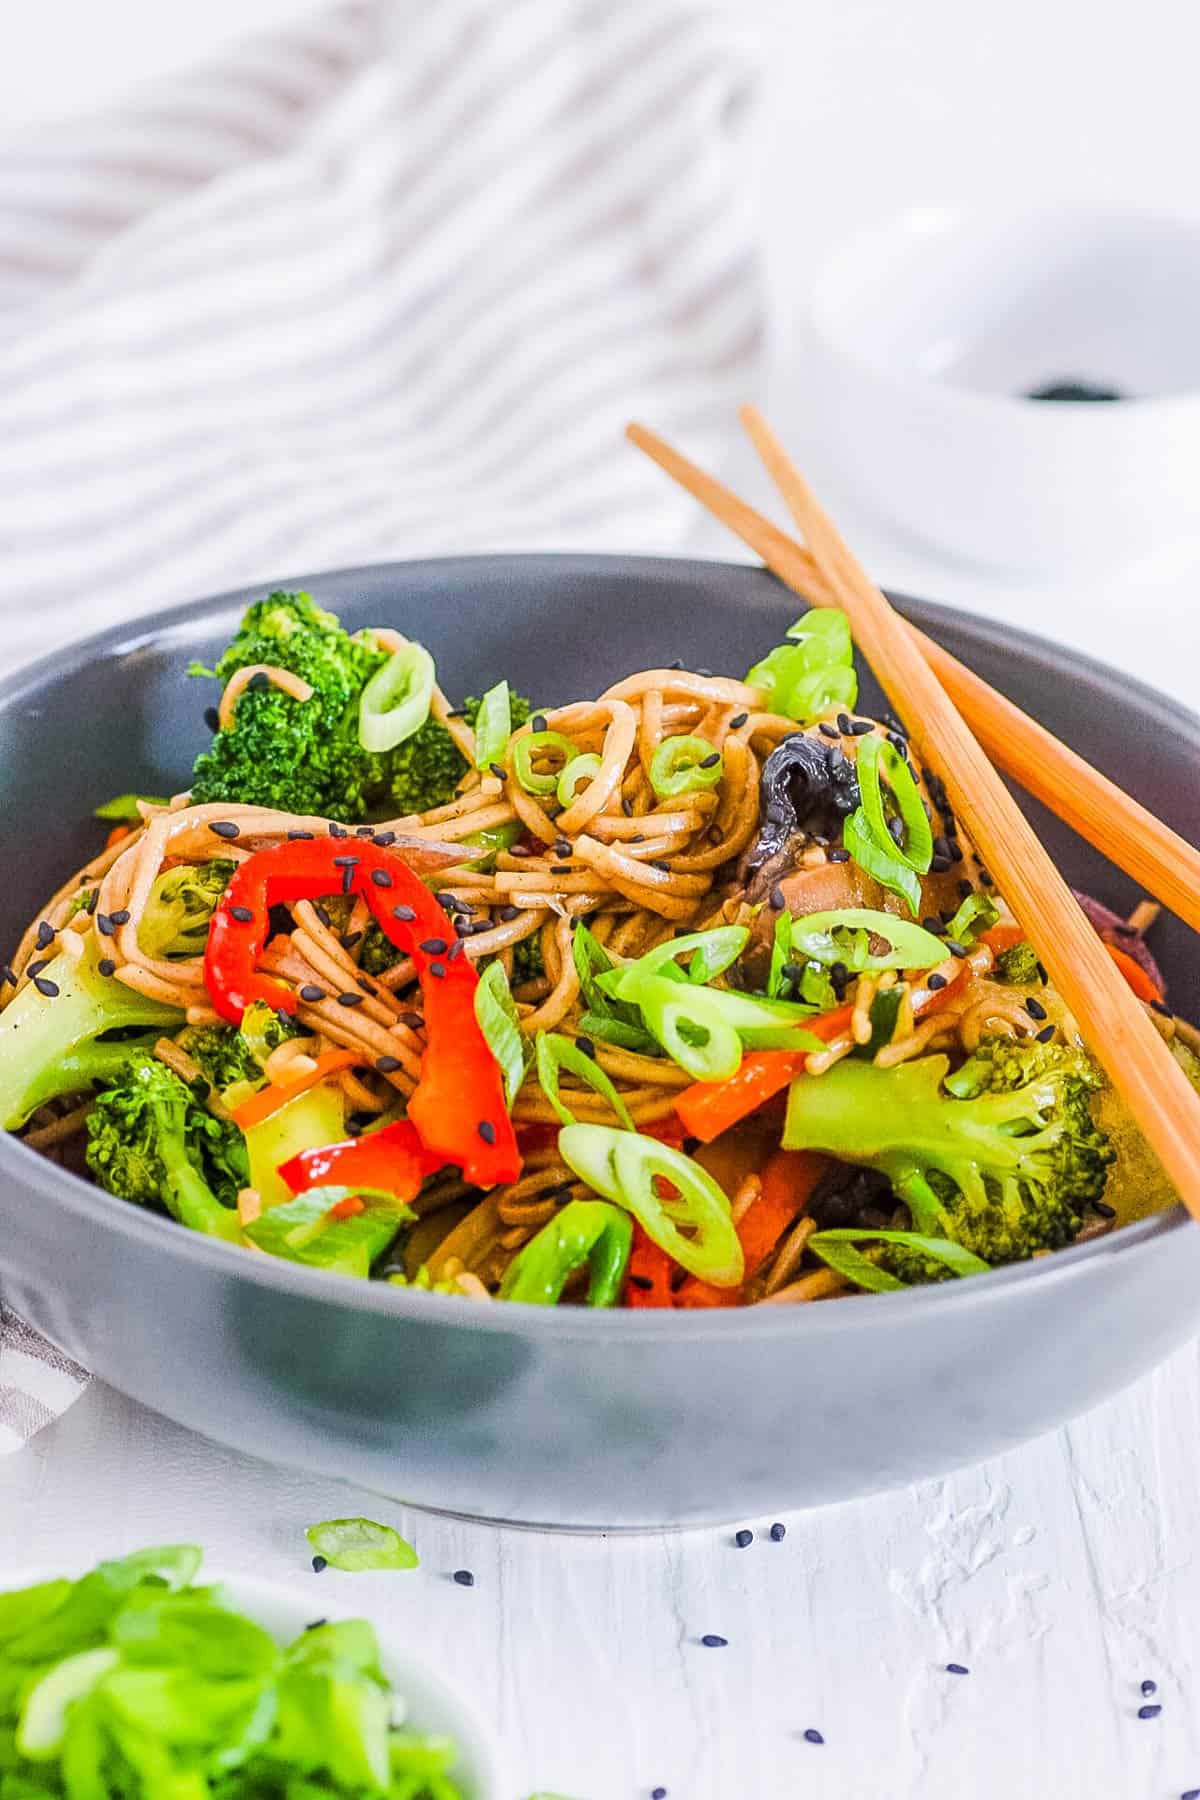 healthy easy vegan teriyaki noodles with veggies in a bowl